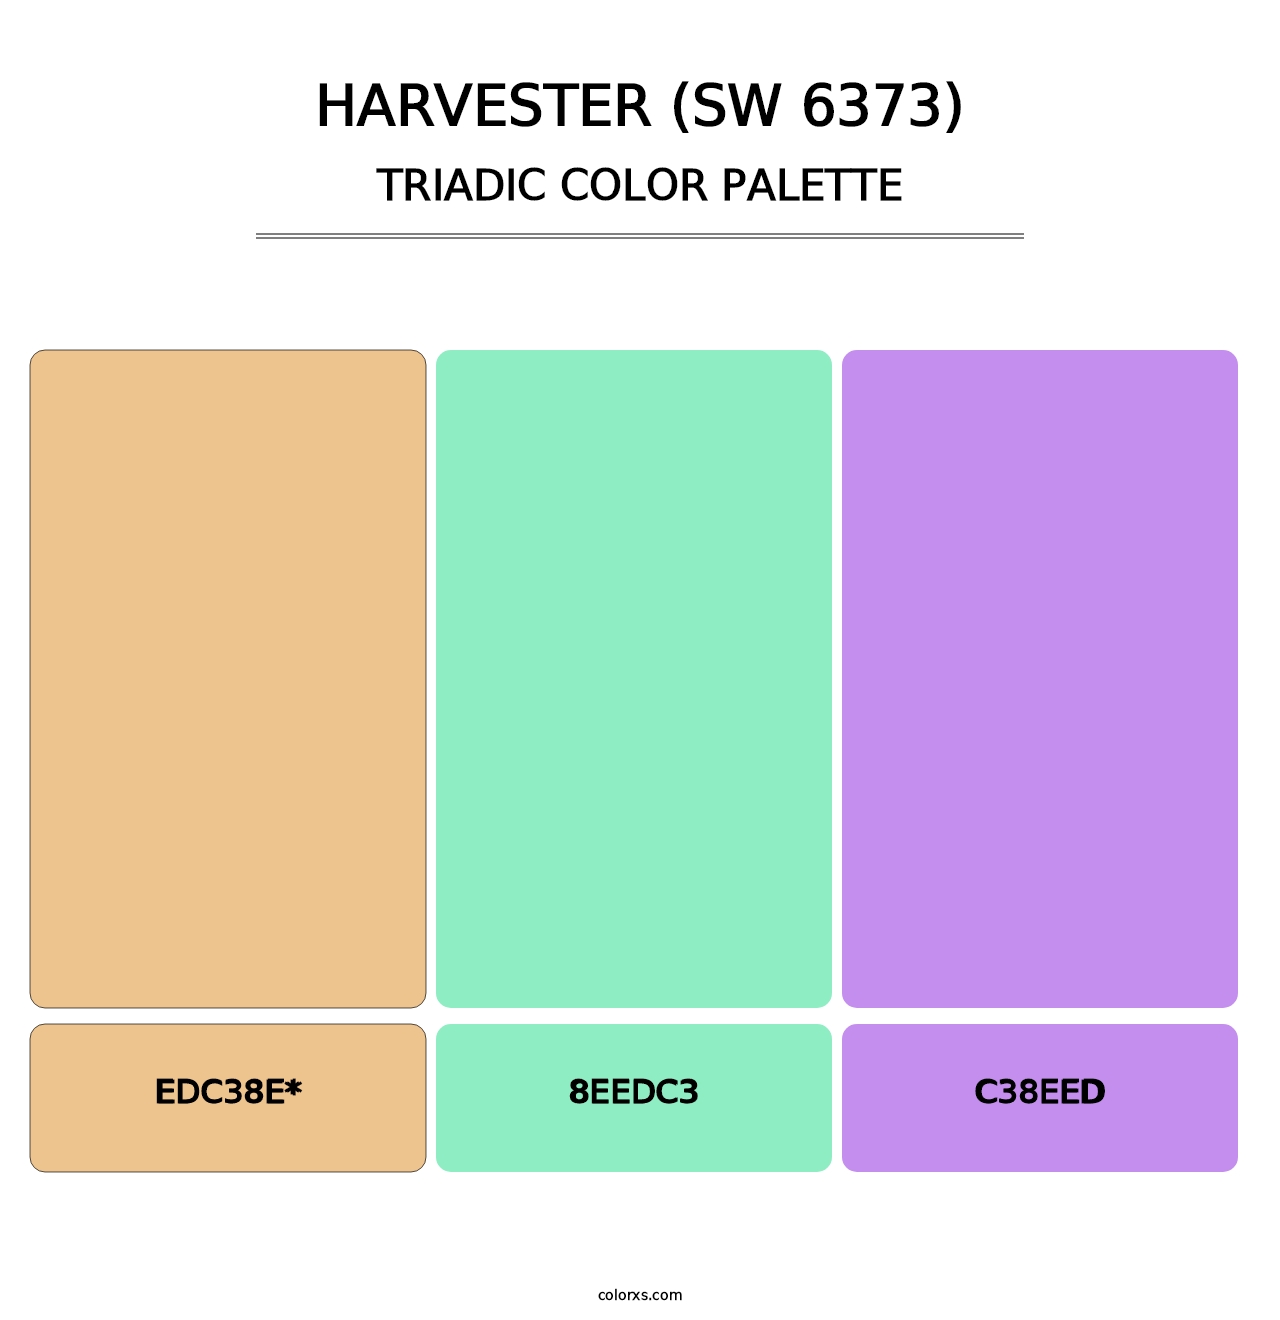 Harvester (SW 6373) - Triadic Color Palette